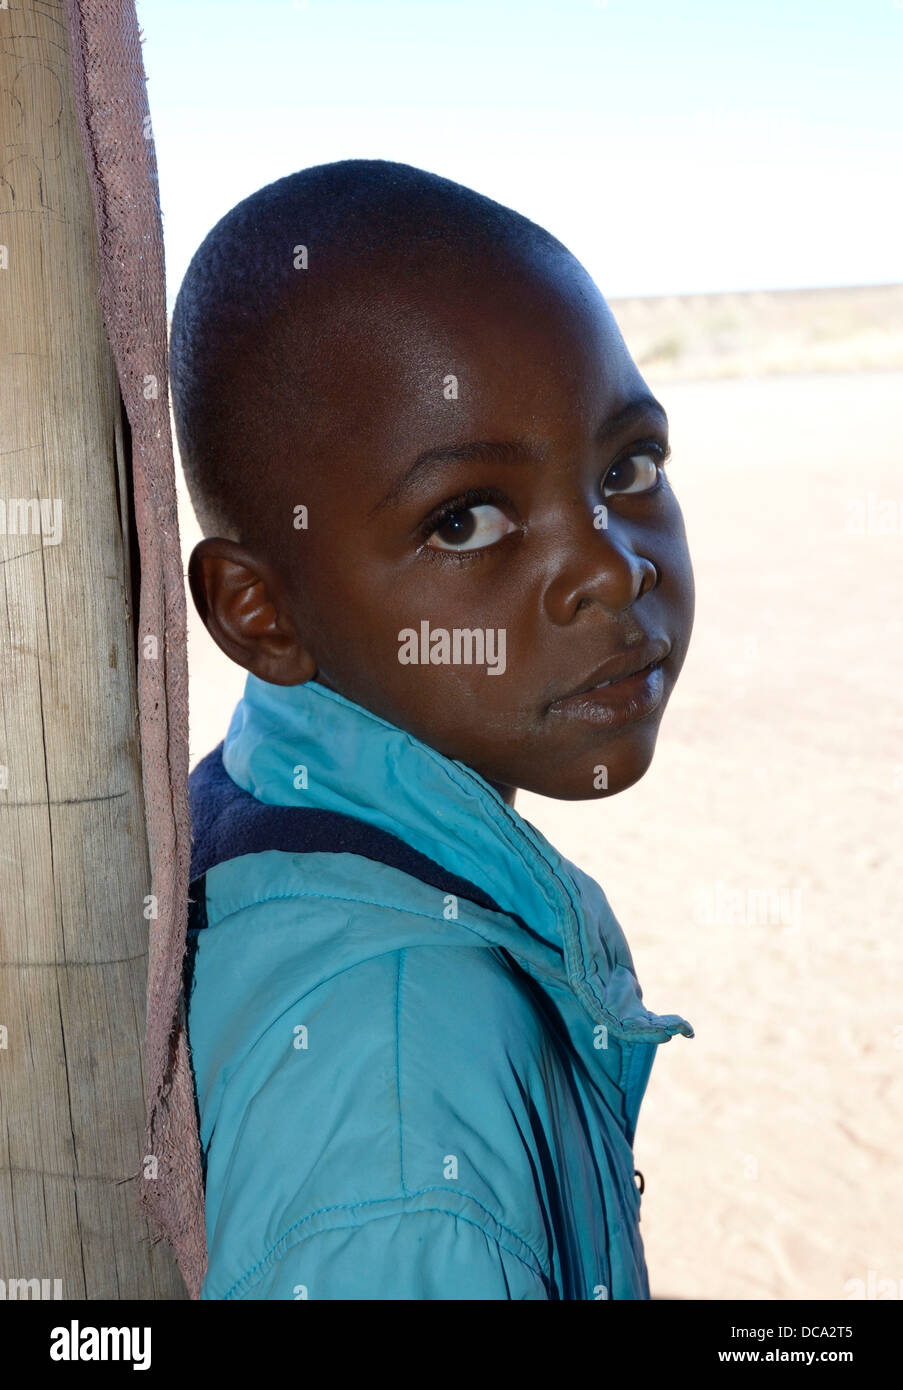 Niño Africano, nueve años aprox. Foto de stock